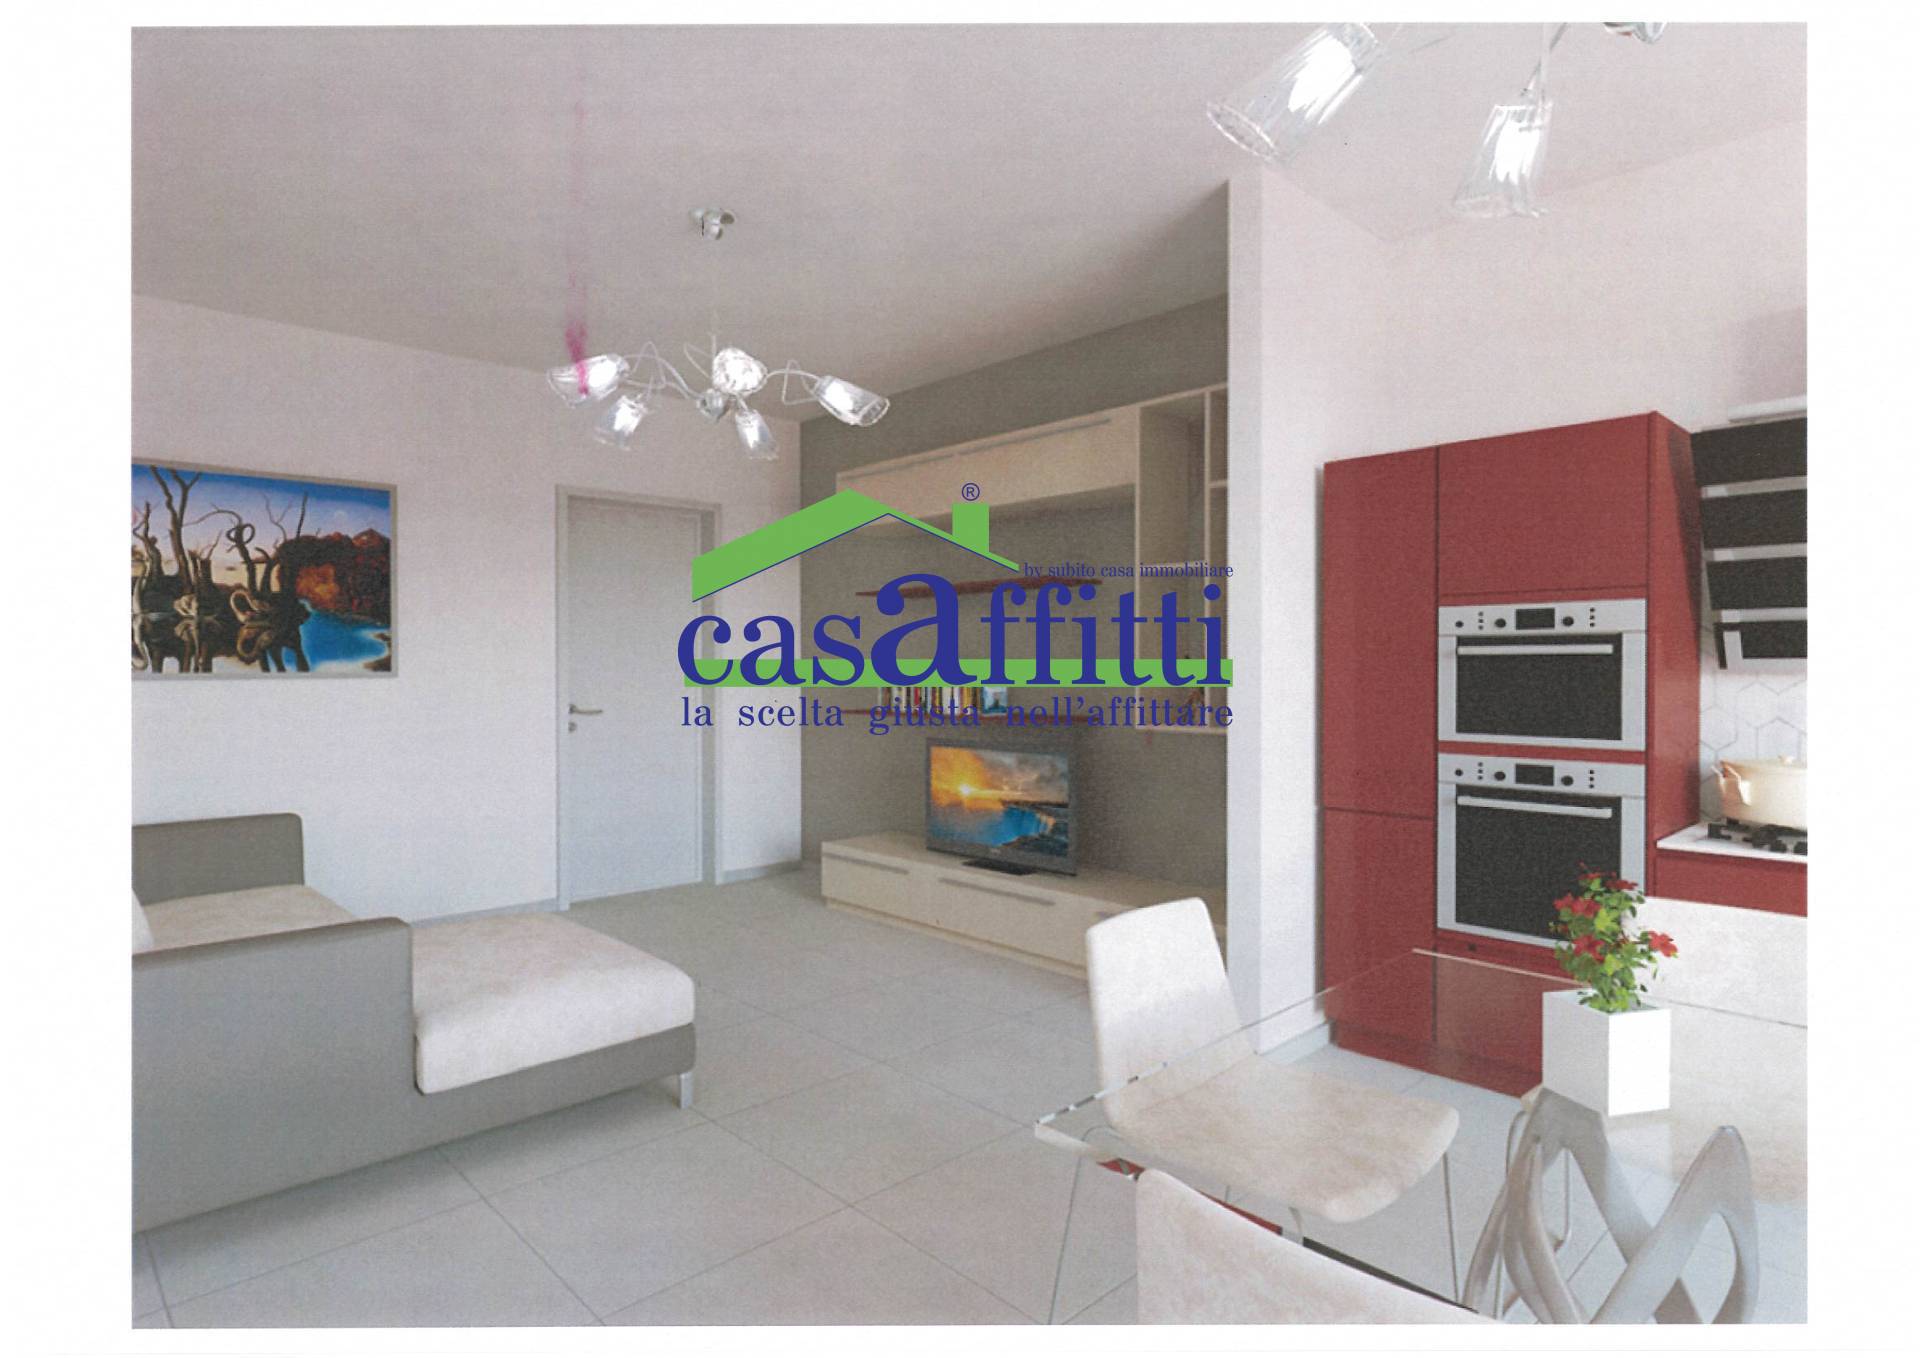 Appartamento in affitto a Chieti, 3 locali, zona Località: ZonaUniversit?, prezzo € 600 | PortaleAgenzieImmobiliari.it